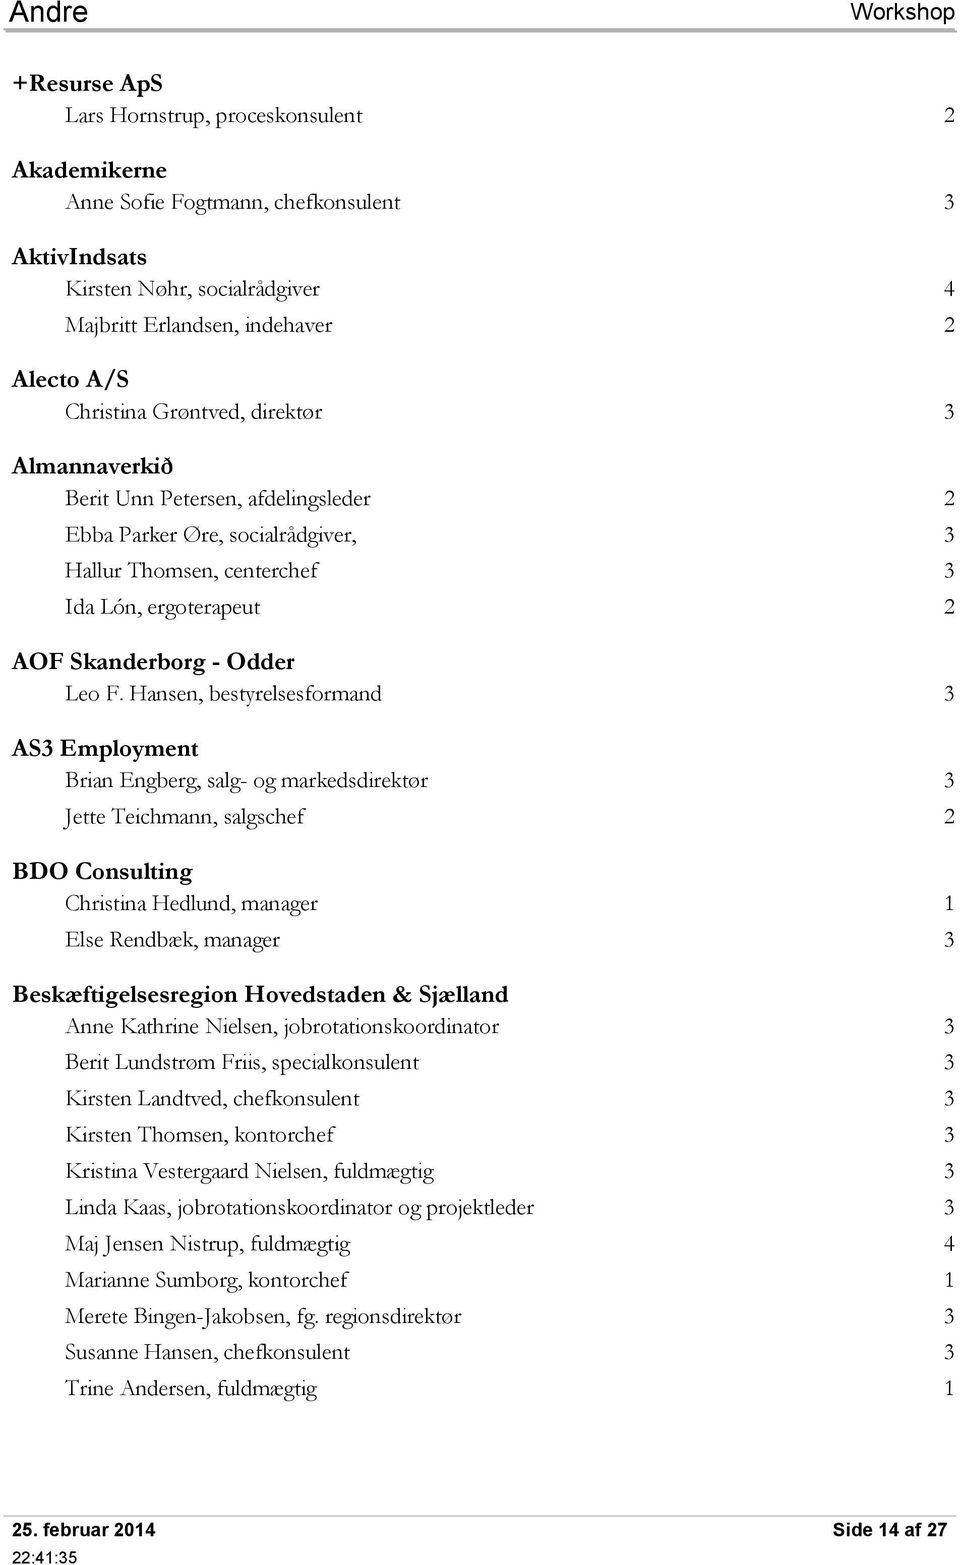 Beskæftigelsestræf Opdateret deltagerliste - PDF Free